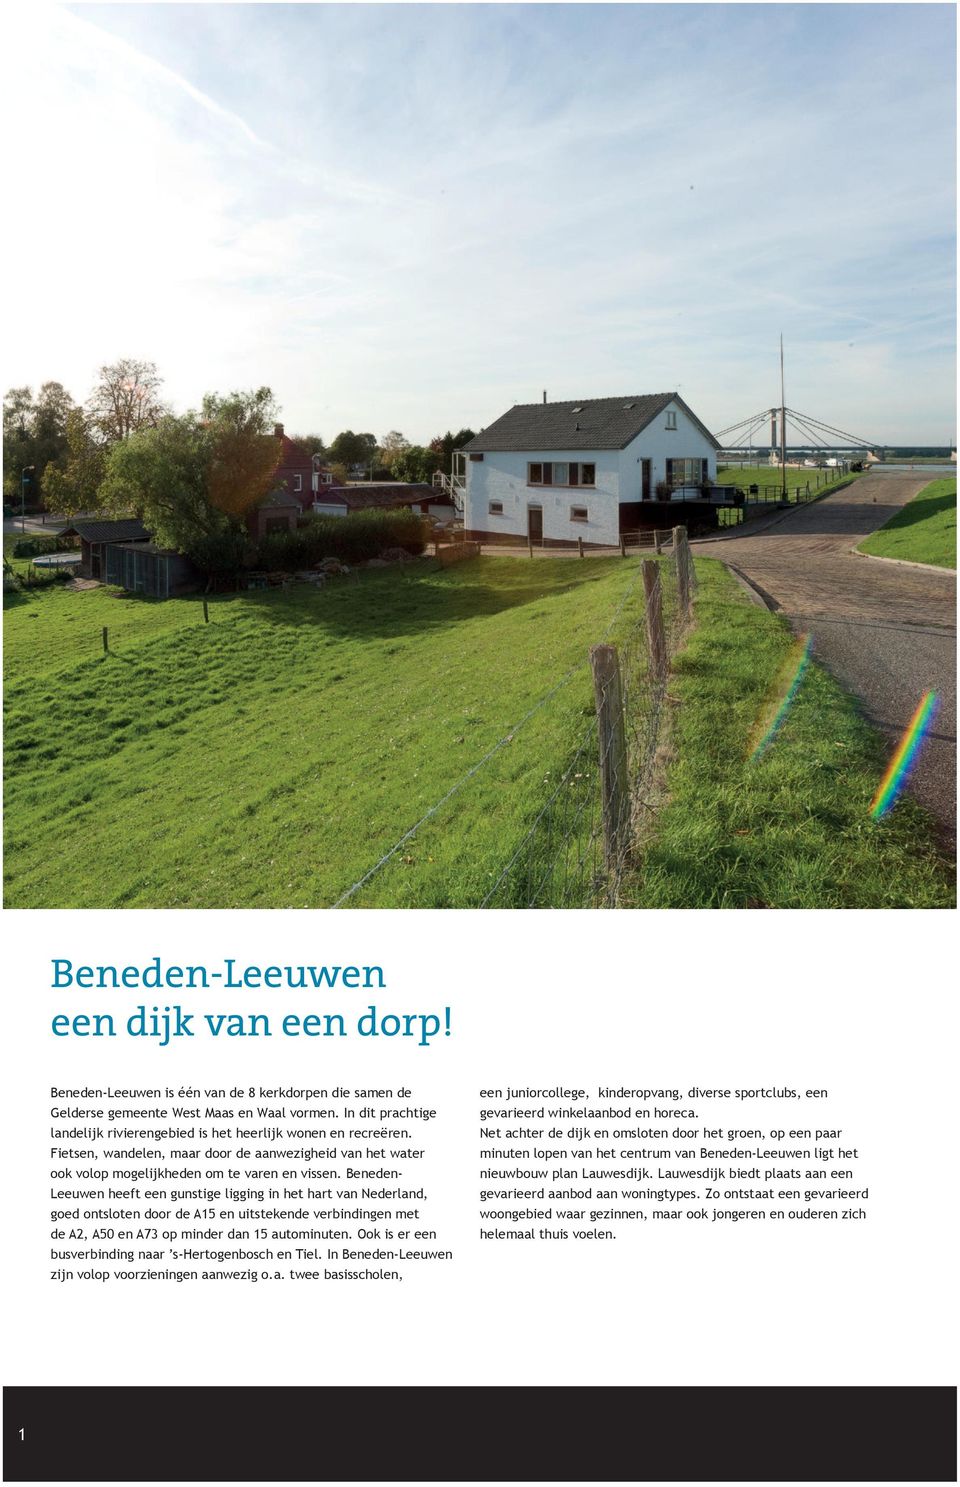 Beneden- Leeuwen heeft een gunstige ligging in het hart van Nederland, goed ontsloten door de A15 en uitstekende verbindingen met de A2, A50 en A73 op minder dan 15 autominuten.